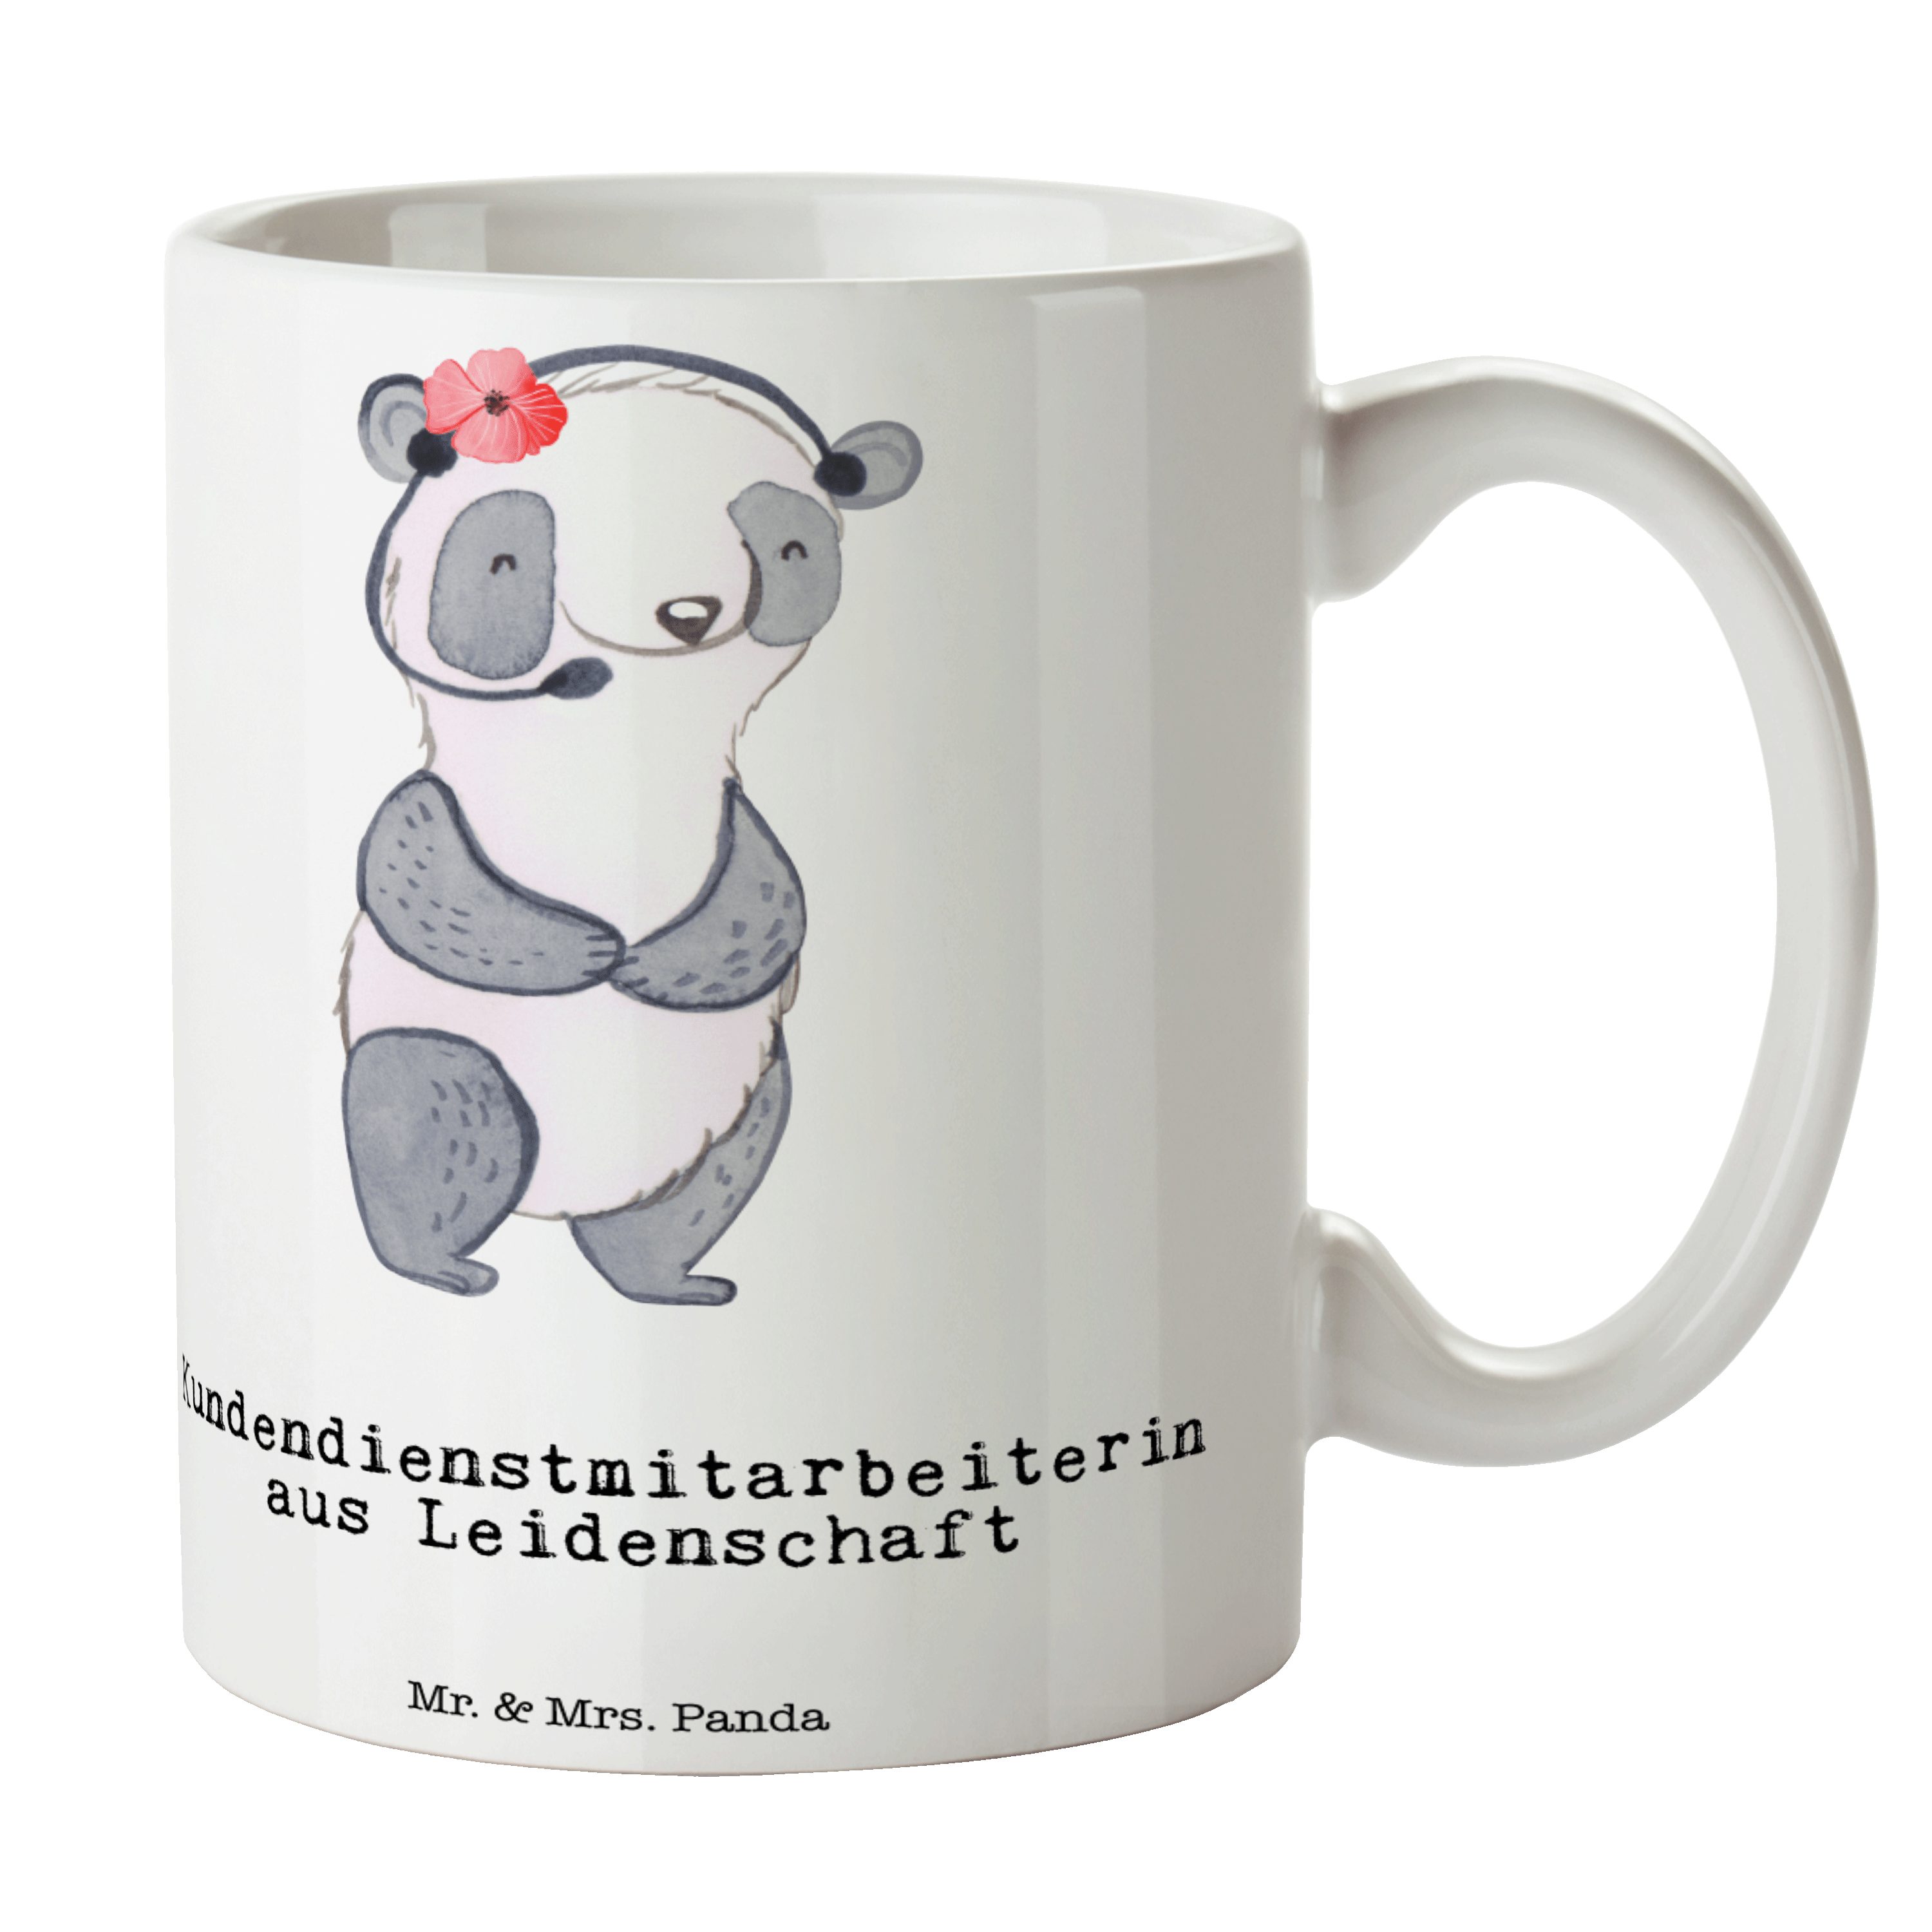 Mr. & Mrs. Panda Tasse Kundendienstmitarbeiterin aus Leidenschaft - Weiß - Geschenk, Tasse, Keramik